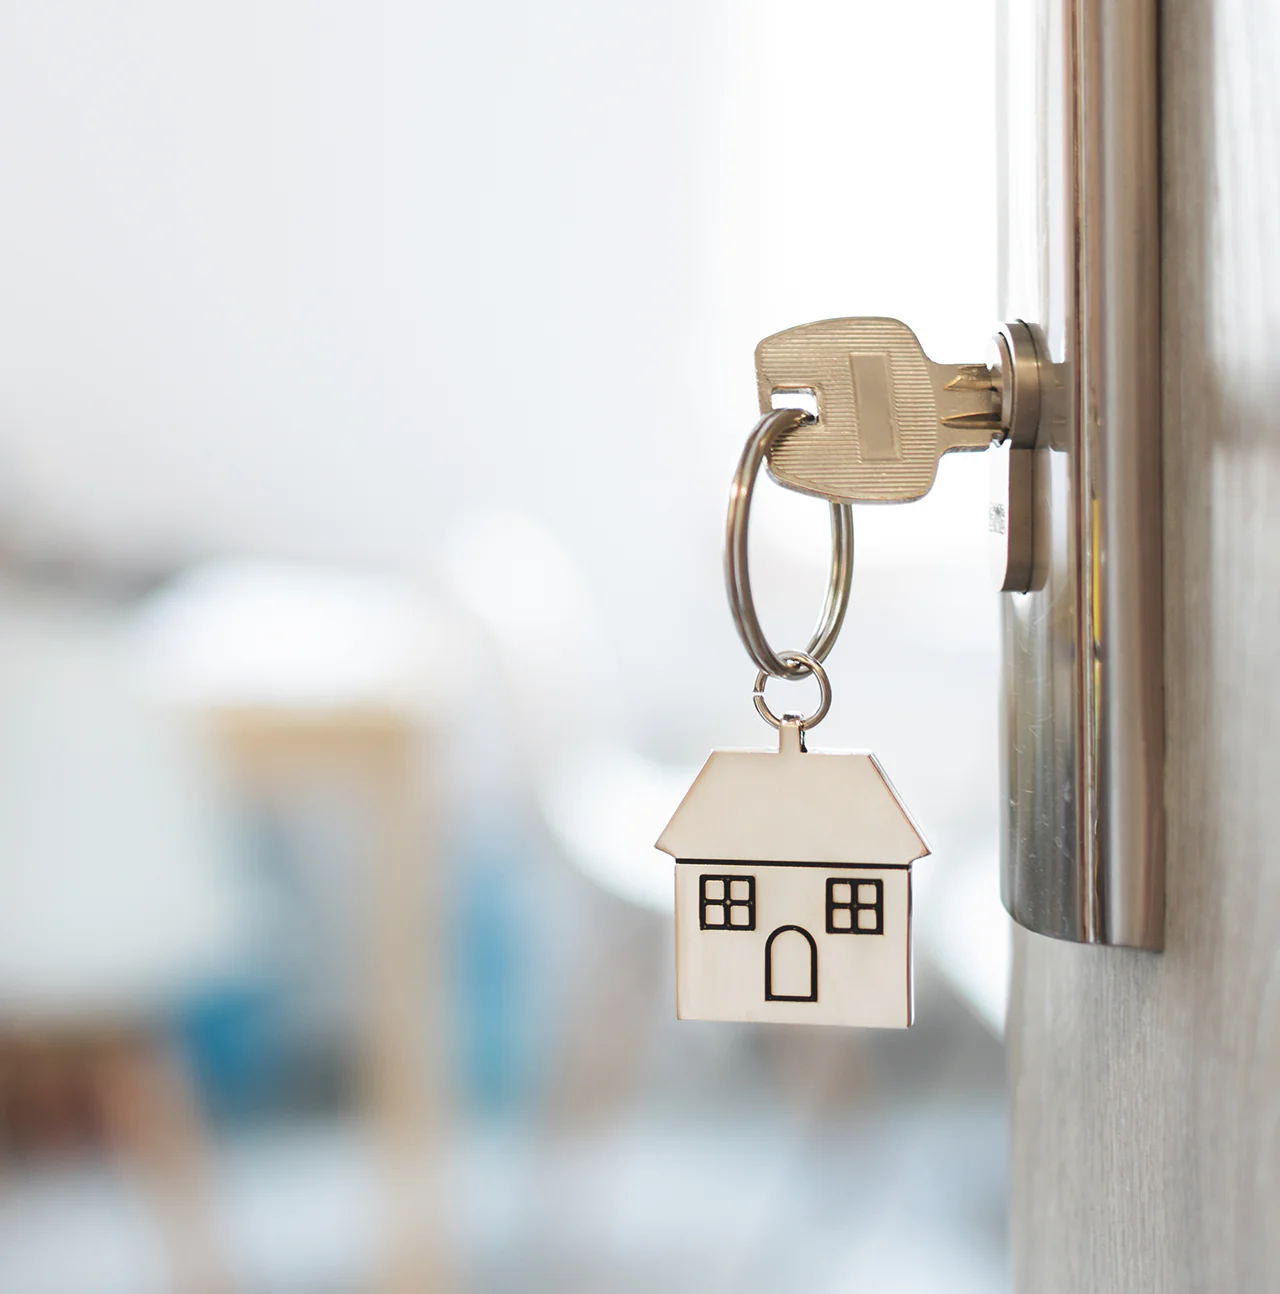 Trouwen En Je Hypotheek: Wat Moet Je Weten? | Trouwen.Nl